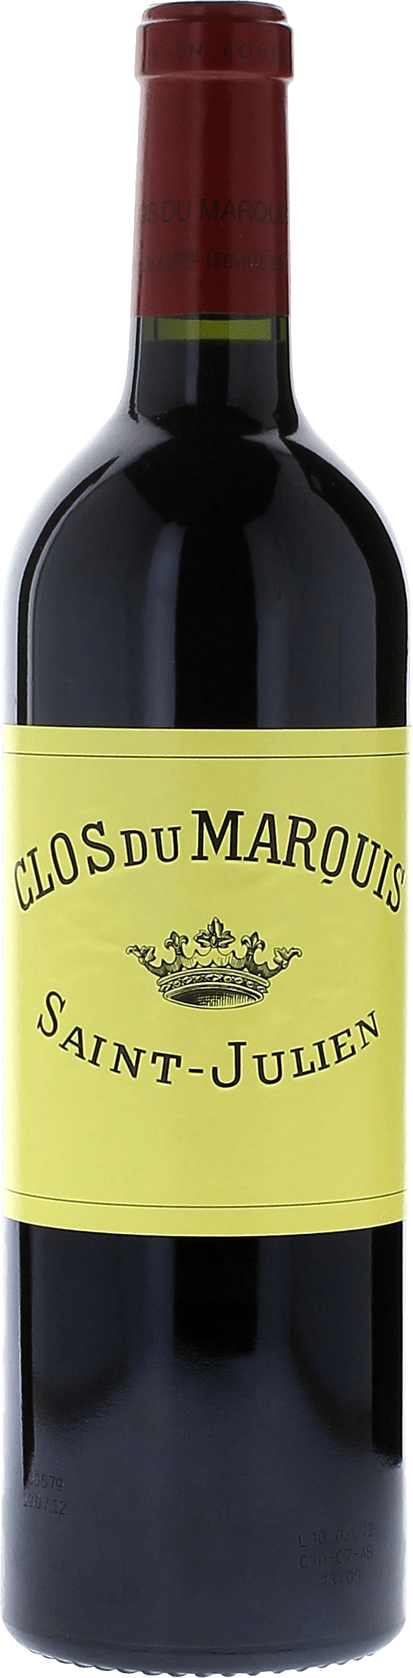 Clos du marquis 2009 2me vin de LEOVILLE LAS CASES Saint-Julien, Bordeaux rouge